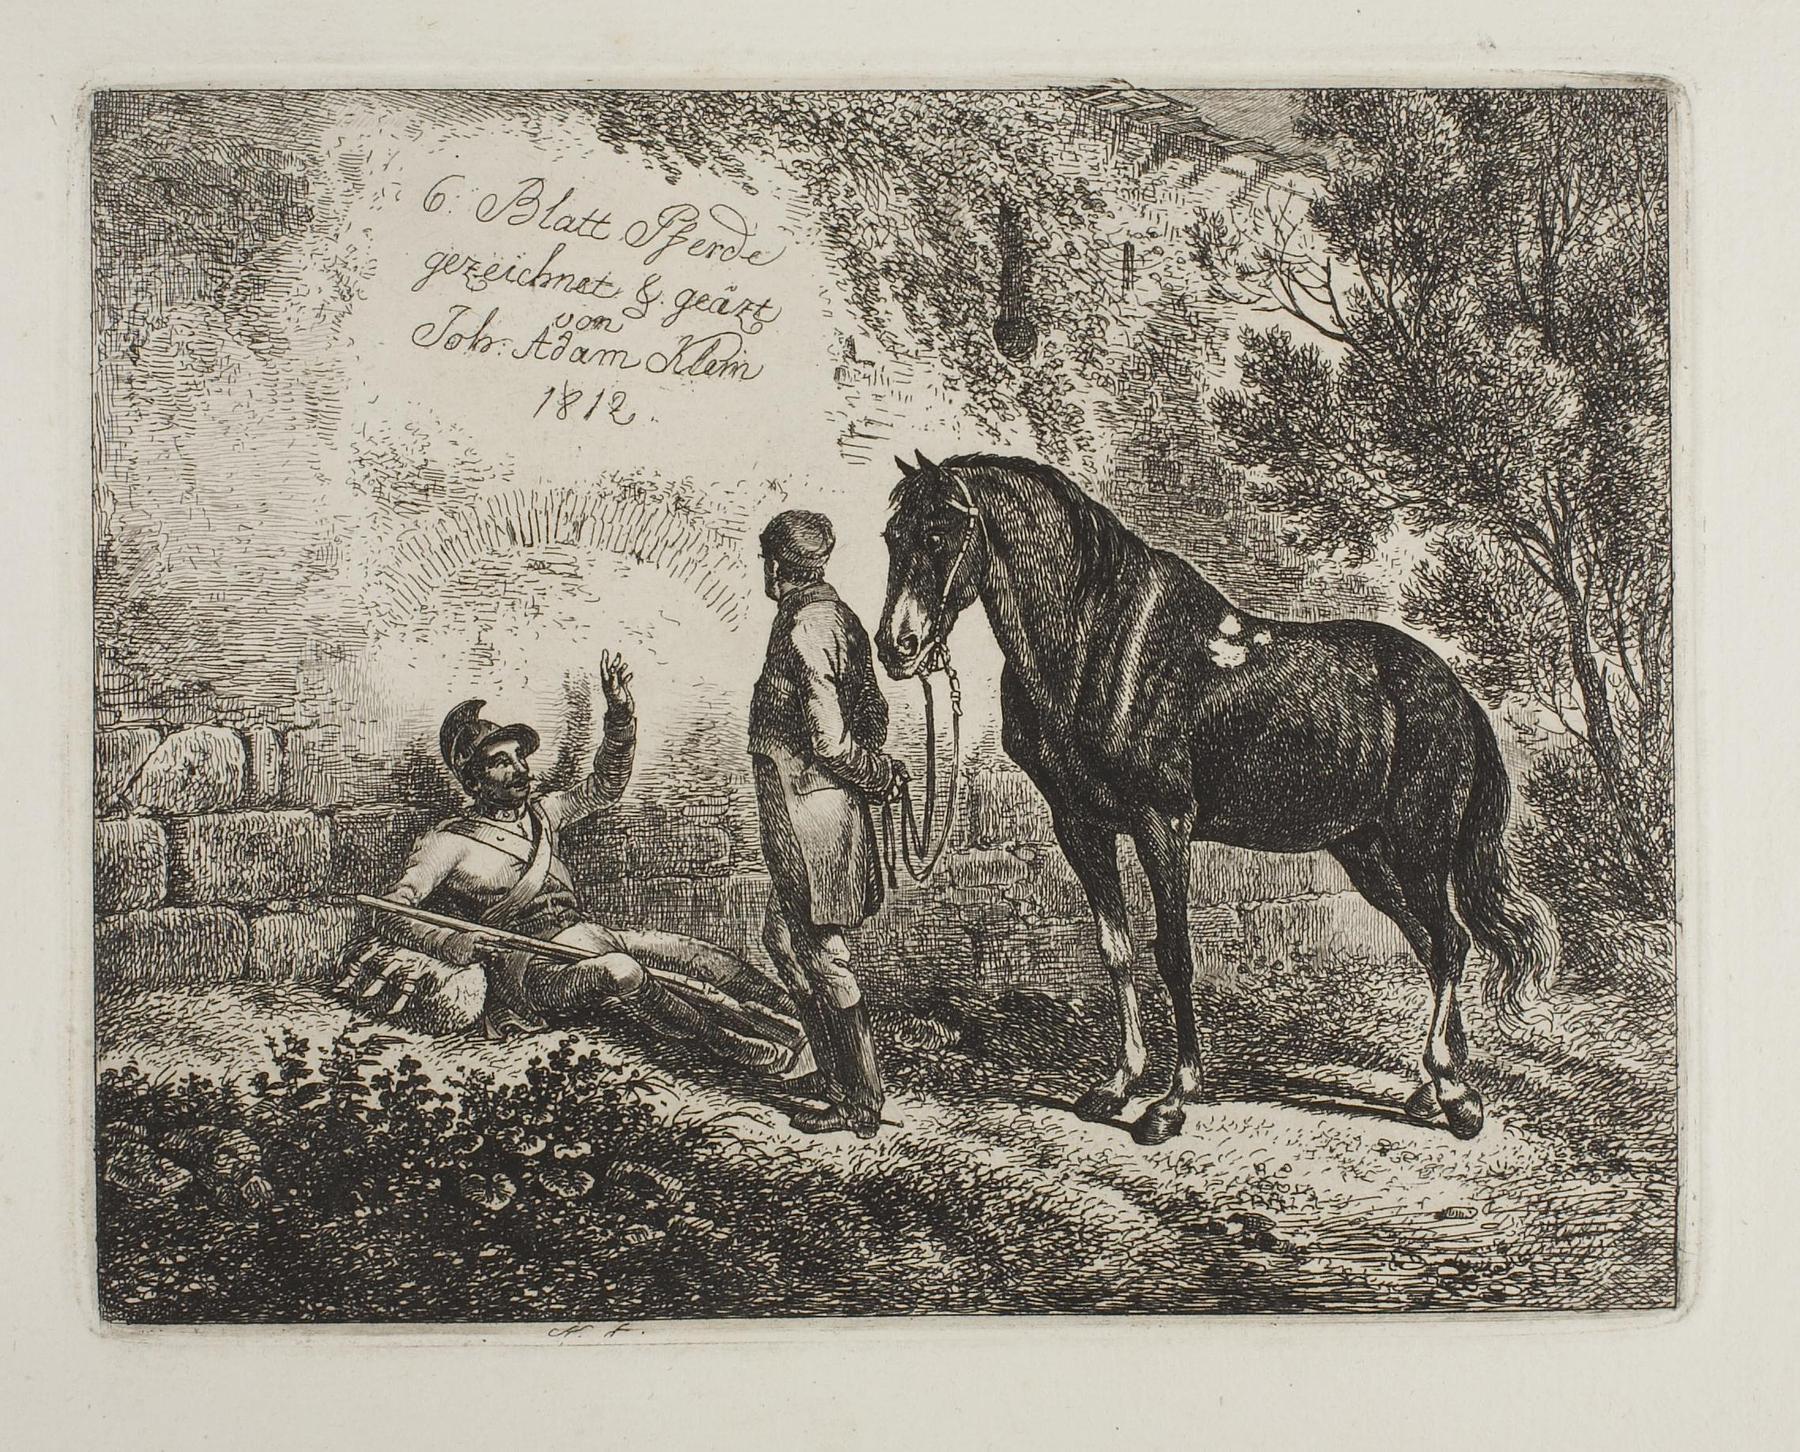 Frontispice for "6 Blatt Pferde gezeichnet & geätzt von Joh. Adam Klein". Rider resting, E646,1